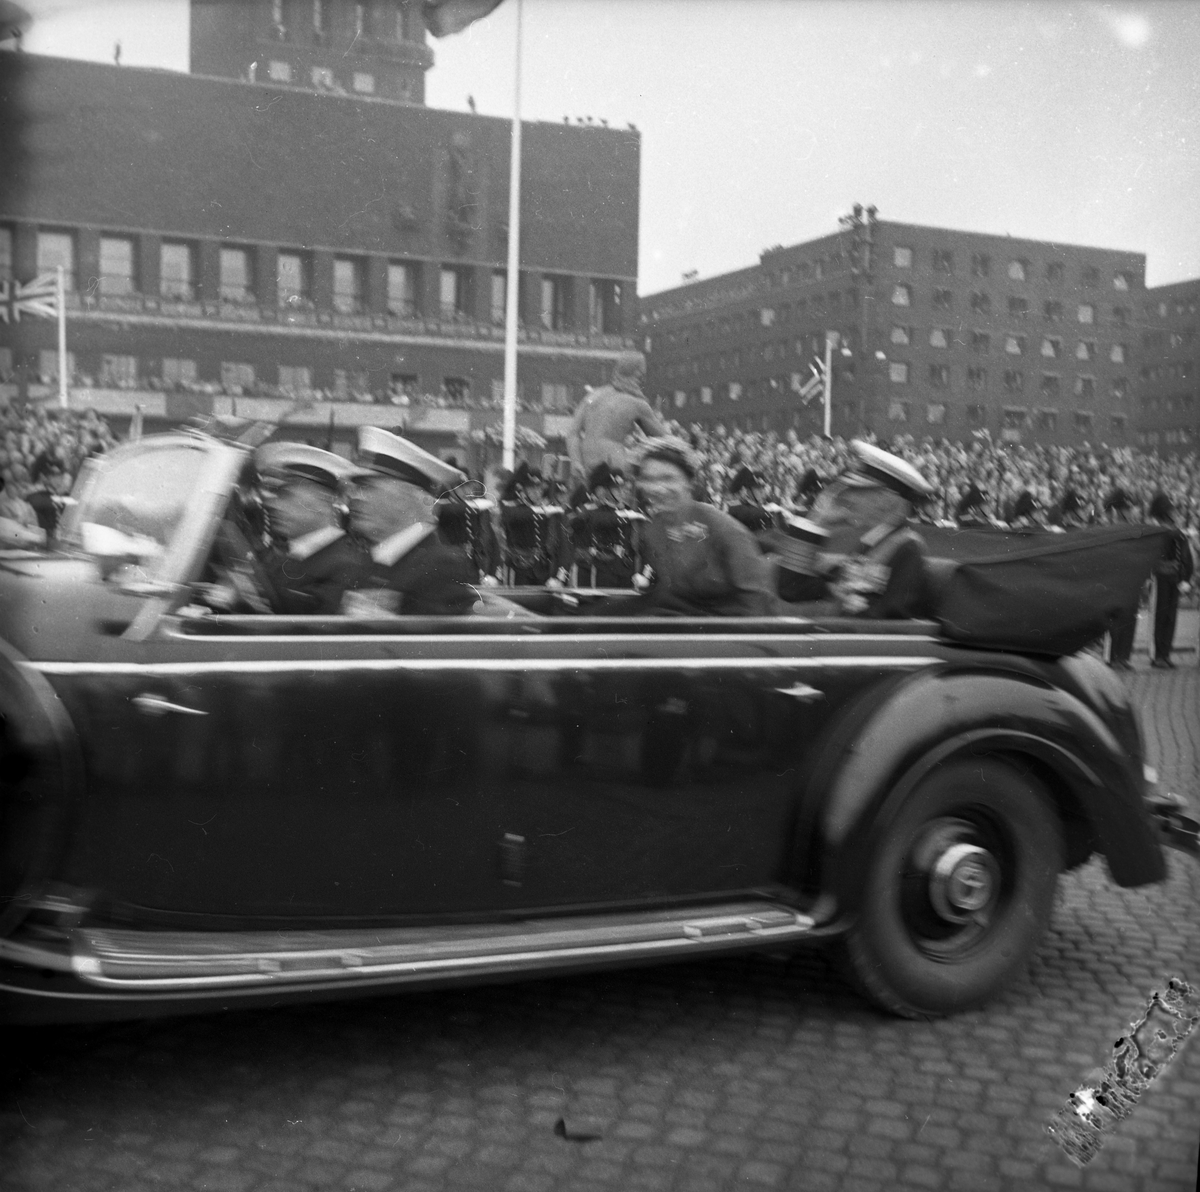 Dronning Elizabeth II på statsbesøk i Norge. Dronningen og Kong Haakon på vei i åpen bil til omvisning i Oslo Rådhus. Publikum langs ruten.